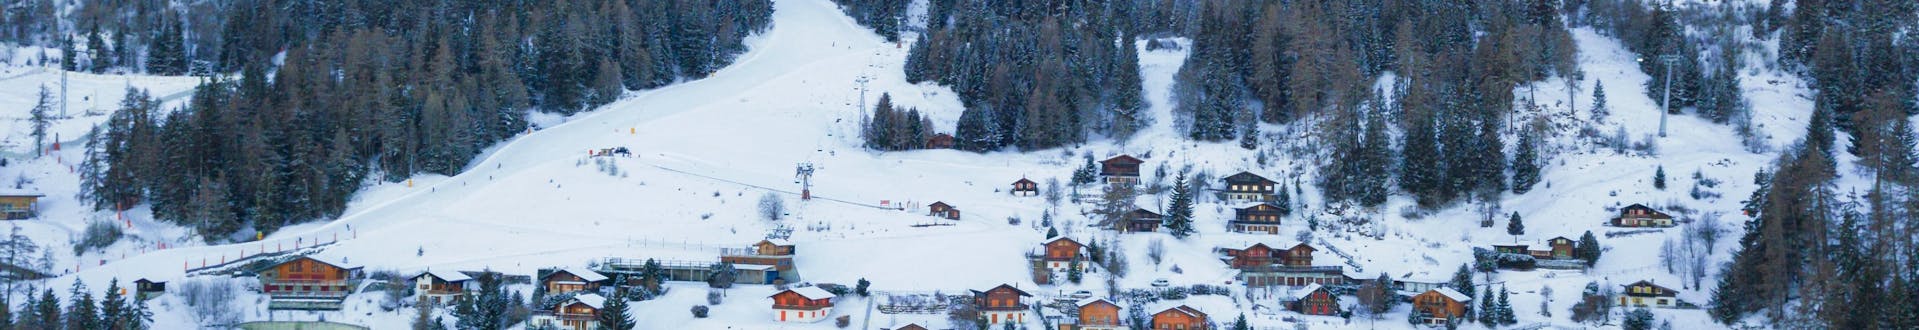 Eine Luftaufnahme der Skipisten von La Tzoumaz, einem beliebten schweizer Skigebiet in dem Besucher bei einer der örtlichen Skischulen einen Skikurs buchen können.